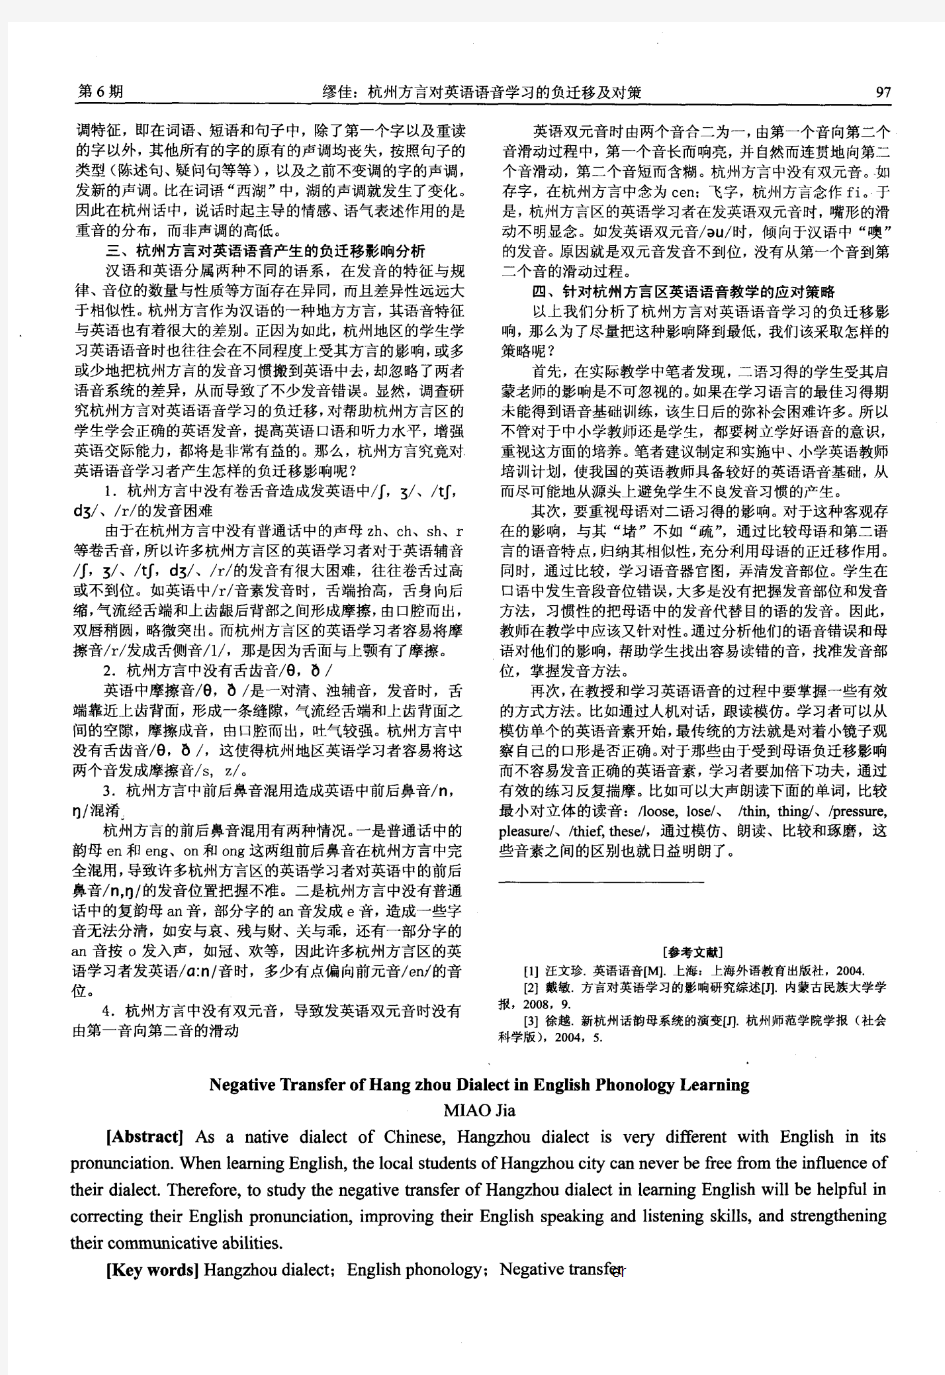 杭州方言对英语语音学习的负迁移及对策